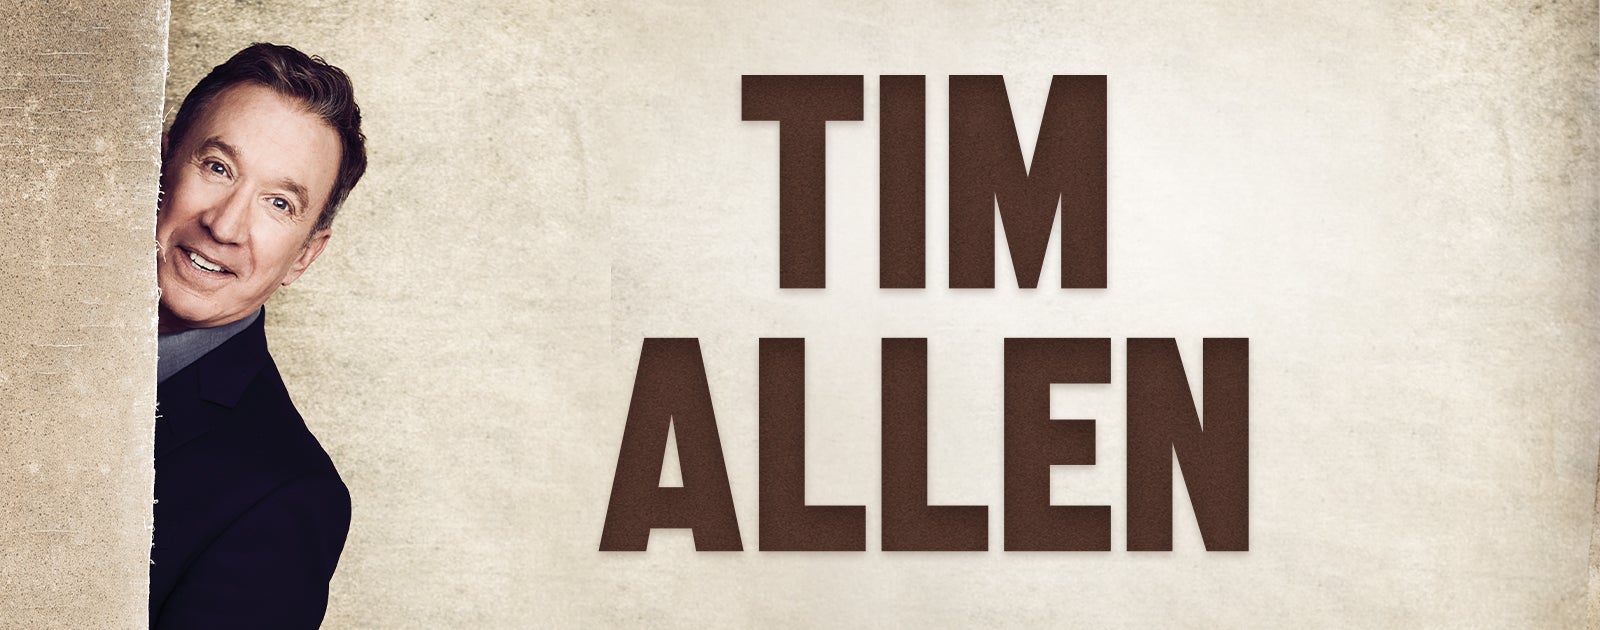 Tim Allen